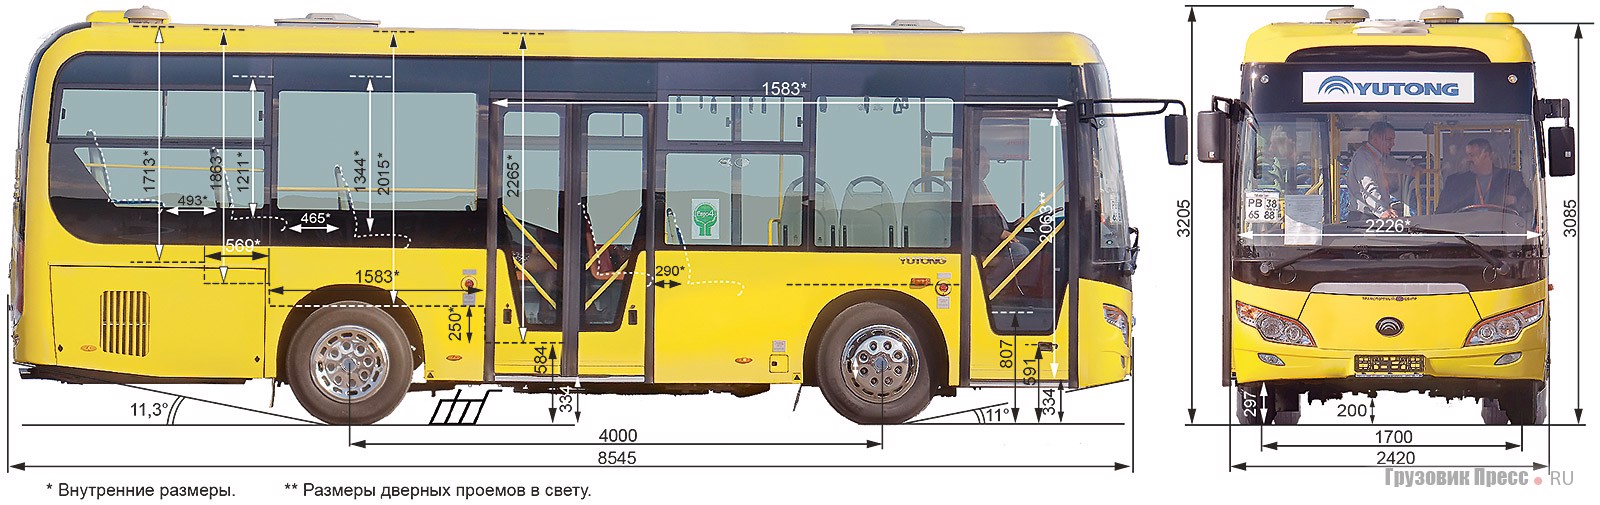 Автобус длиной 15 метров. Автобус Ютонг zk6852hg. Yutong zk6852hg габариты. Автобус малого класса Yutong 6852hg. Автобус Yutong zk6852hg чертеж.